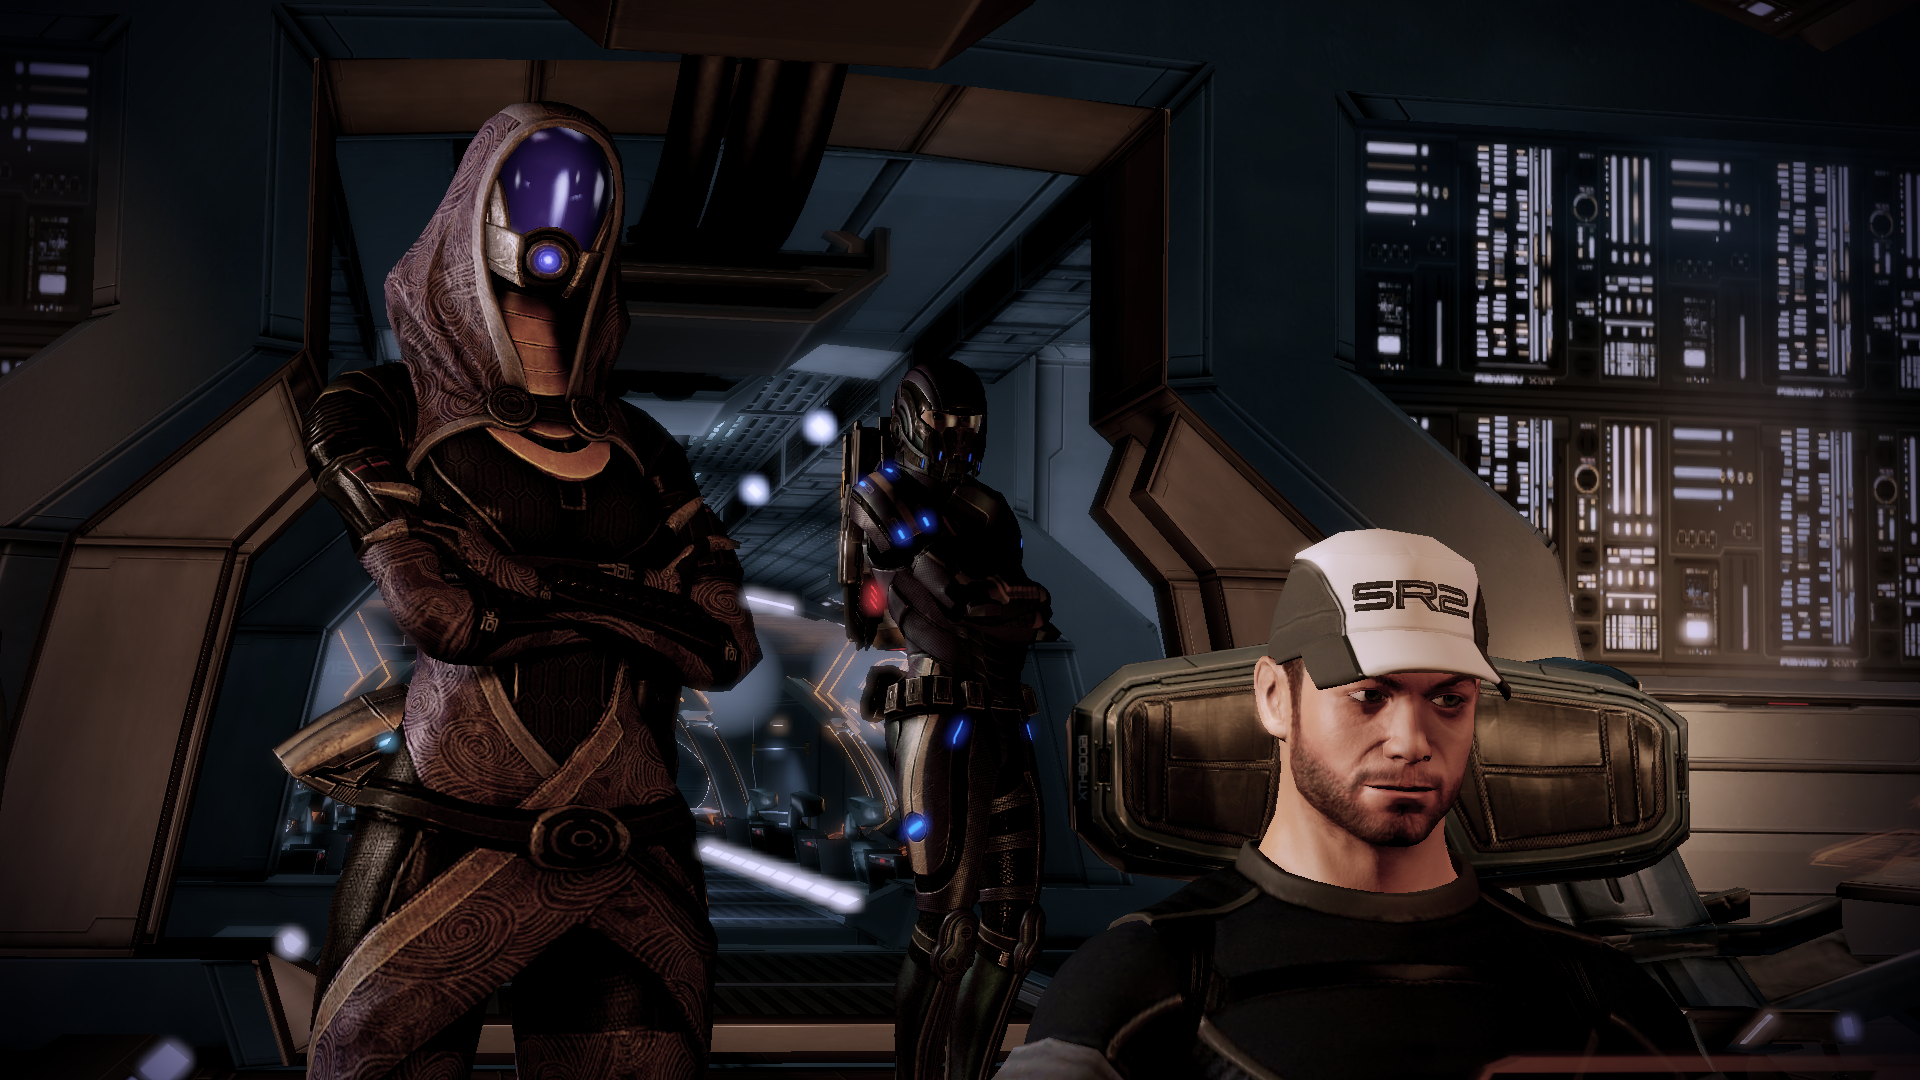 Tali Mass Effect Wallpaper